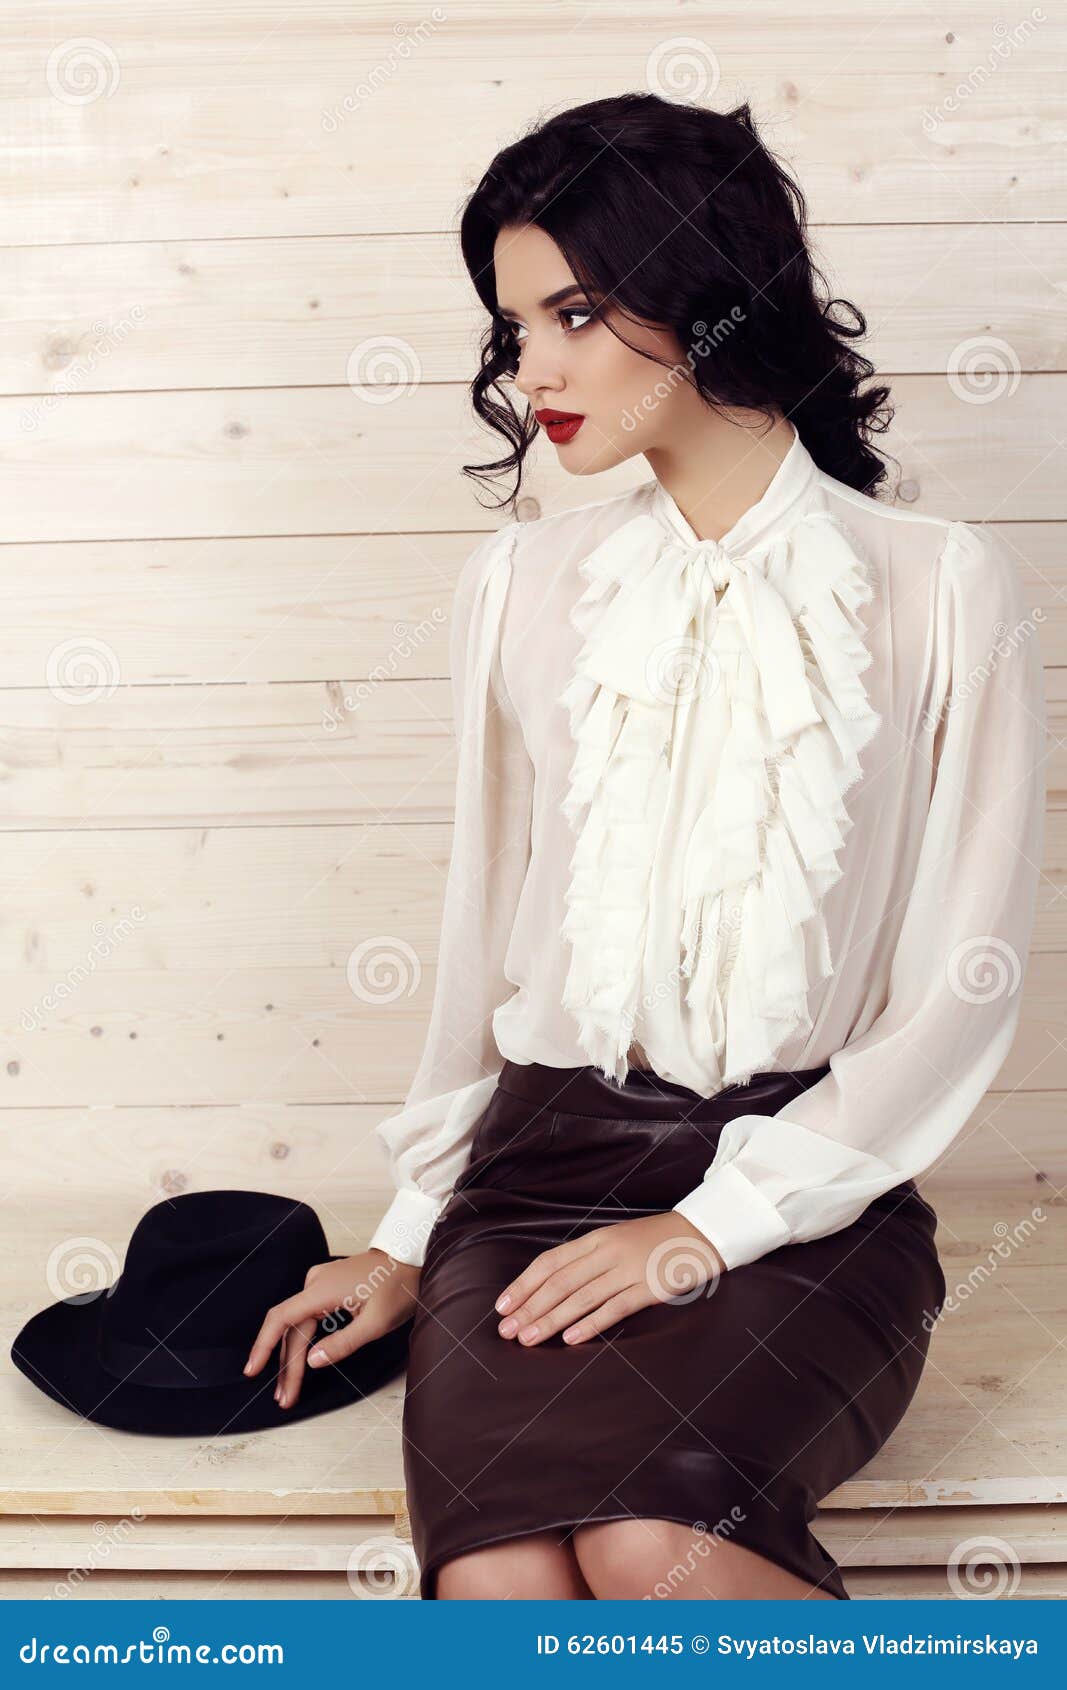 Mujer Sensual Con El Pelo Oscuro La Ropa Elegante Que Presenta En Estudio Imagen de archivo - de muchacha, detalles: 62601445